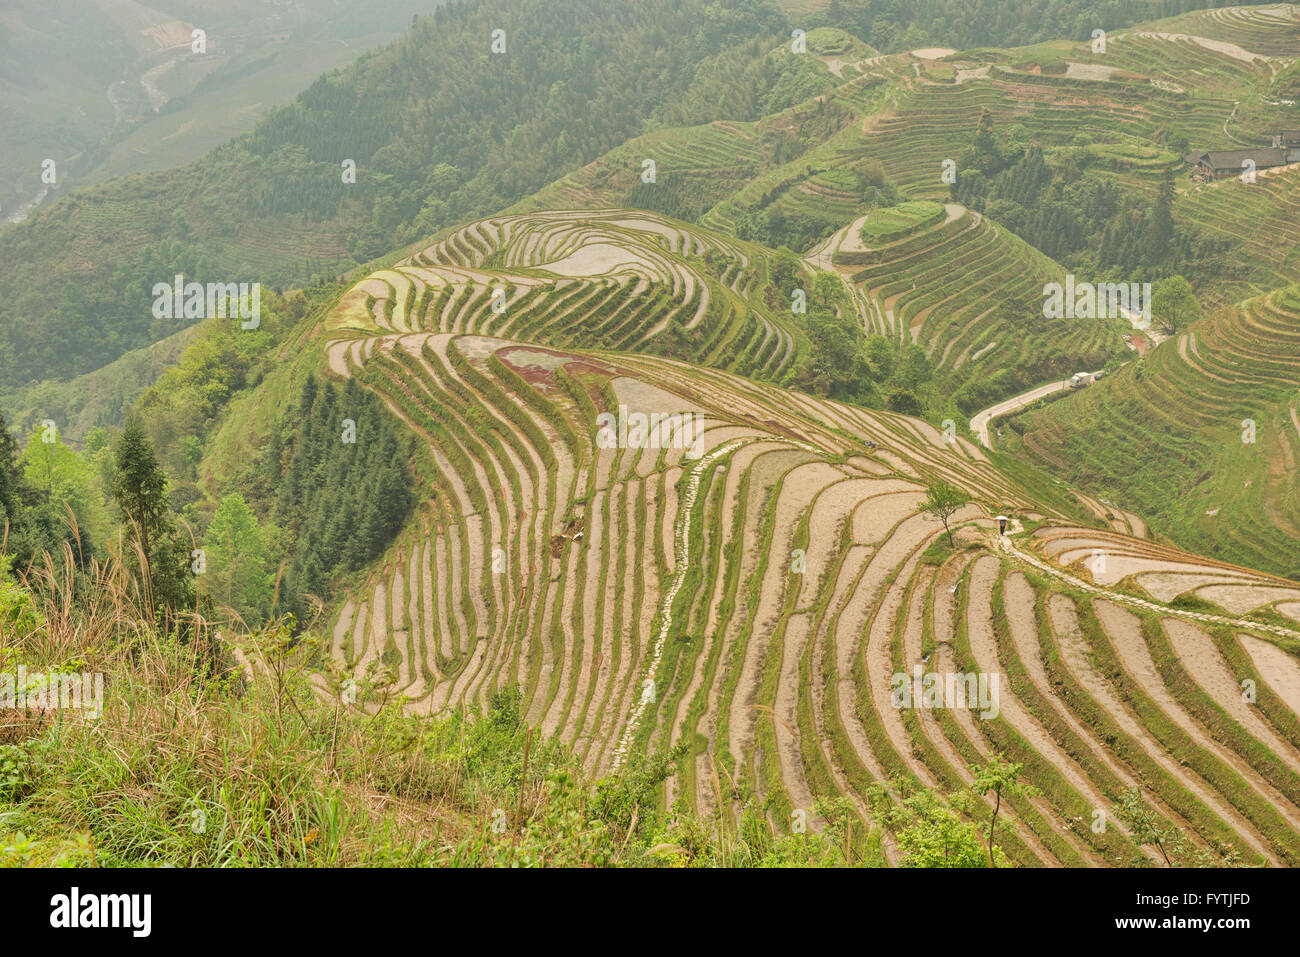 Les magnifiques rizières en terrasse de Ping'an dans la région autonome du Guangxi, Longji, Chine Banque D'Images